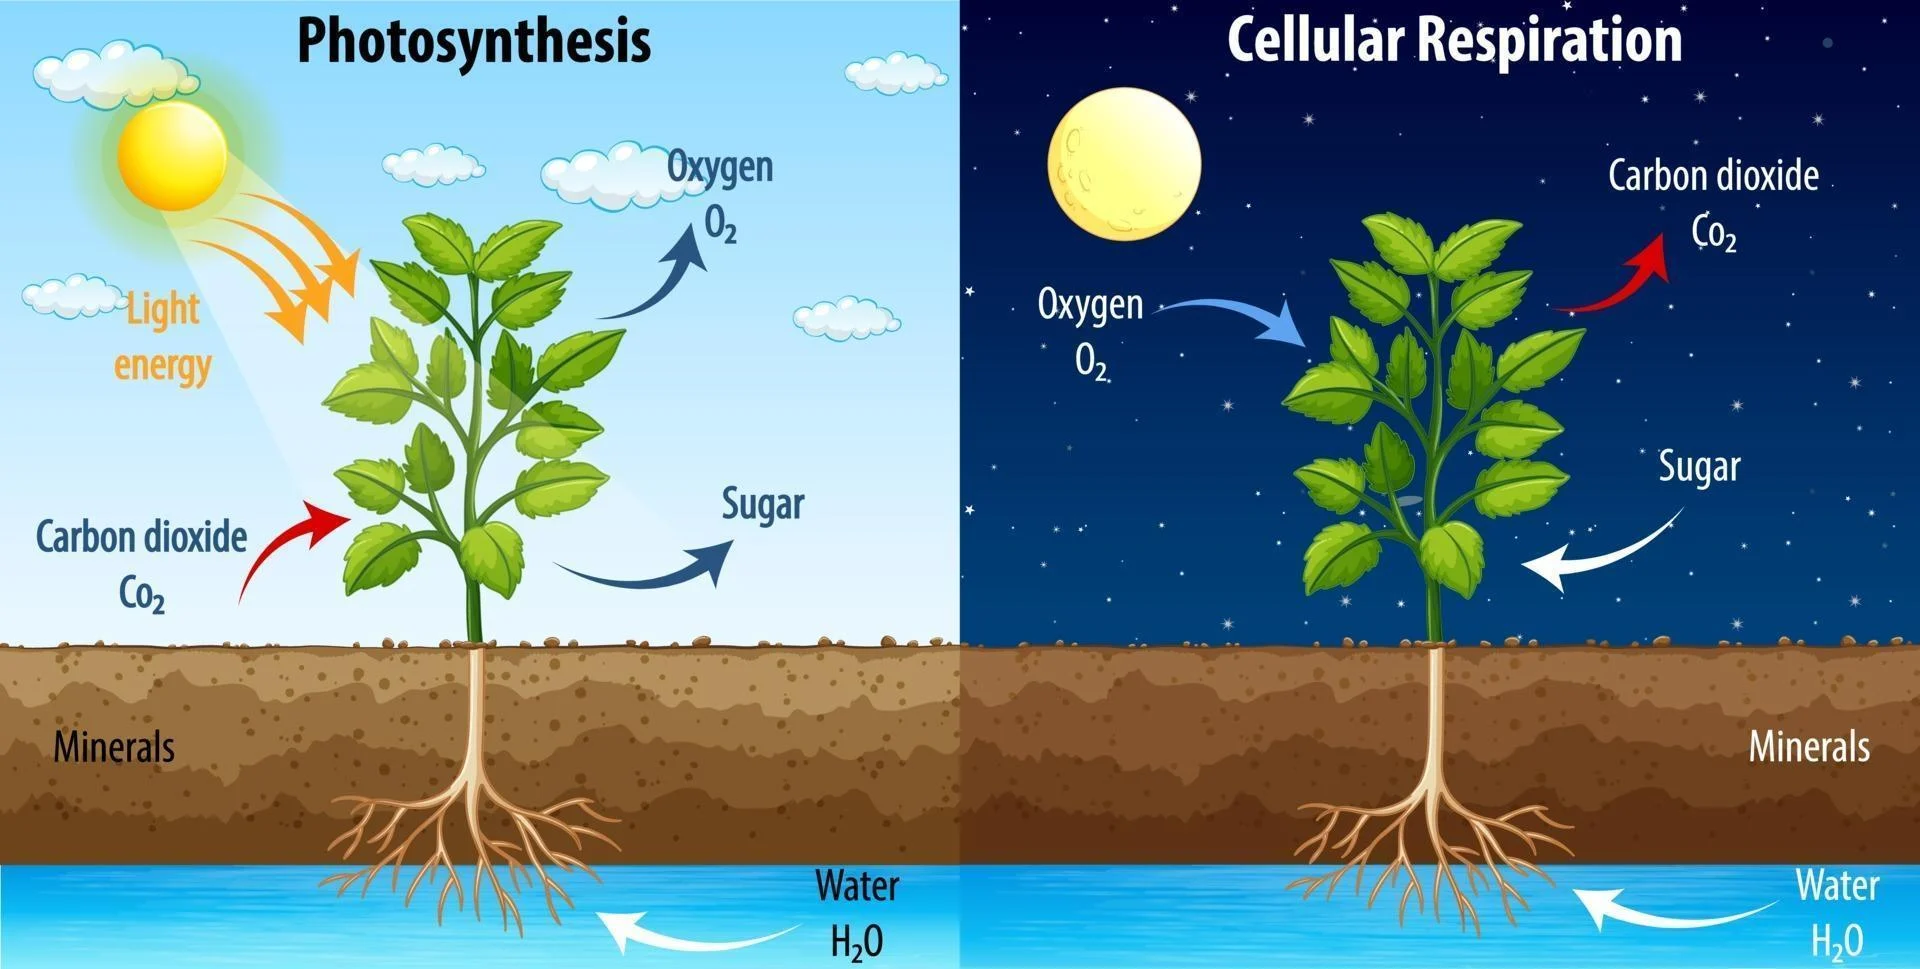 گیاهان از طریق فتوسنتز اکسیژن آزاد می کنند